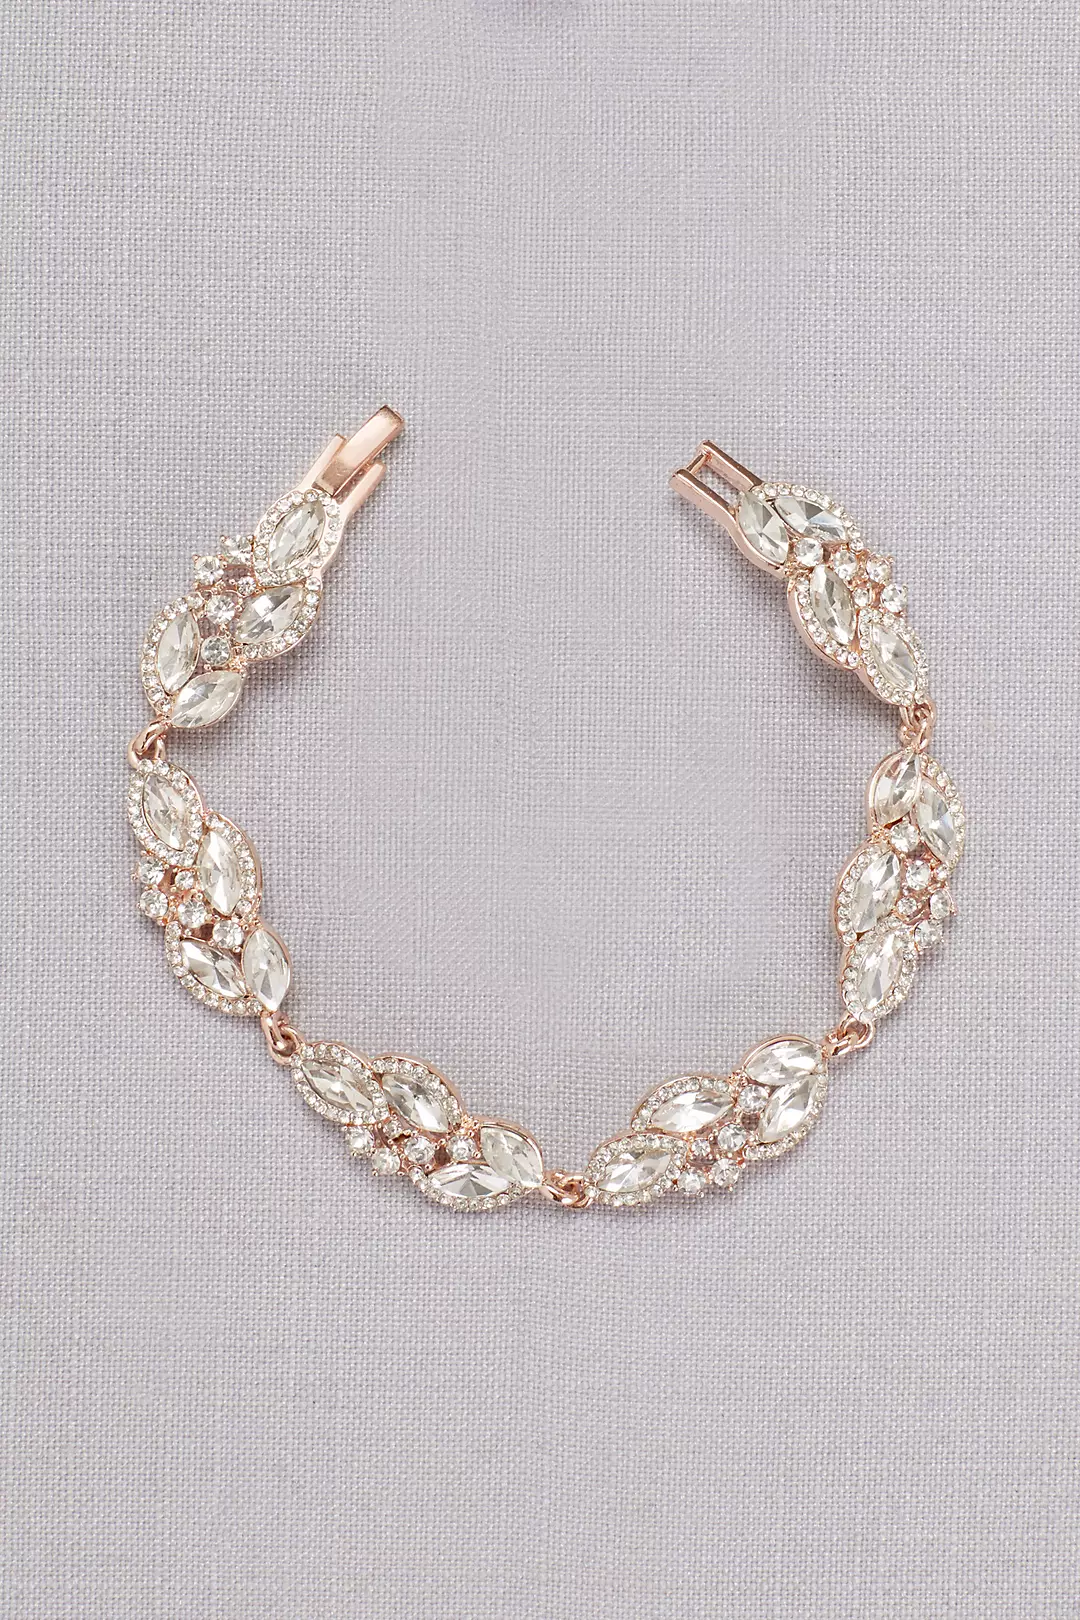 Faceted Crystal Leaves Bracelet Image